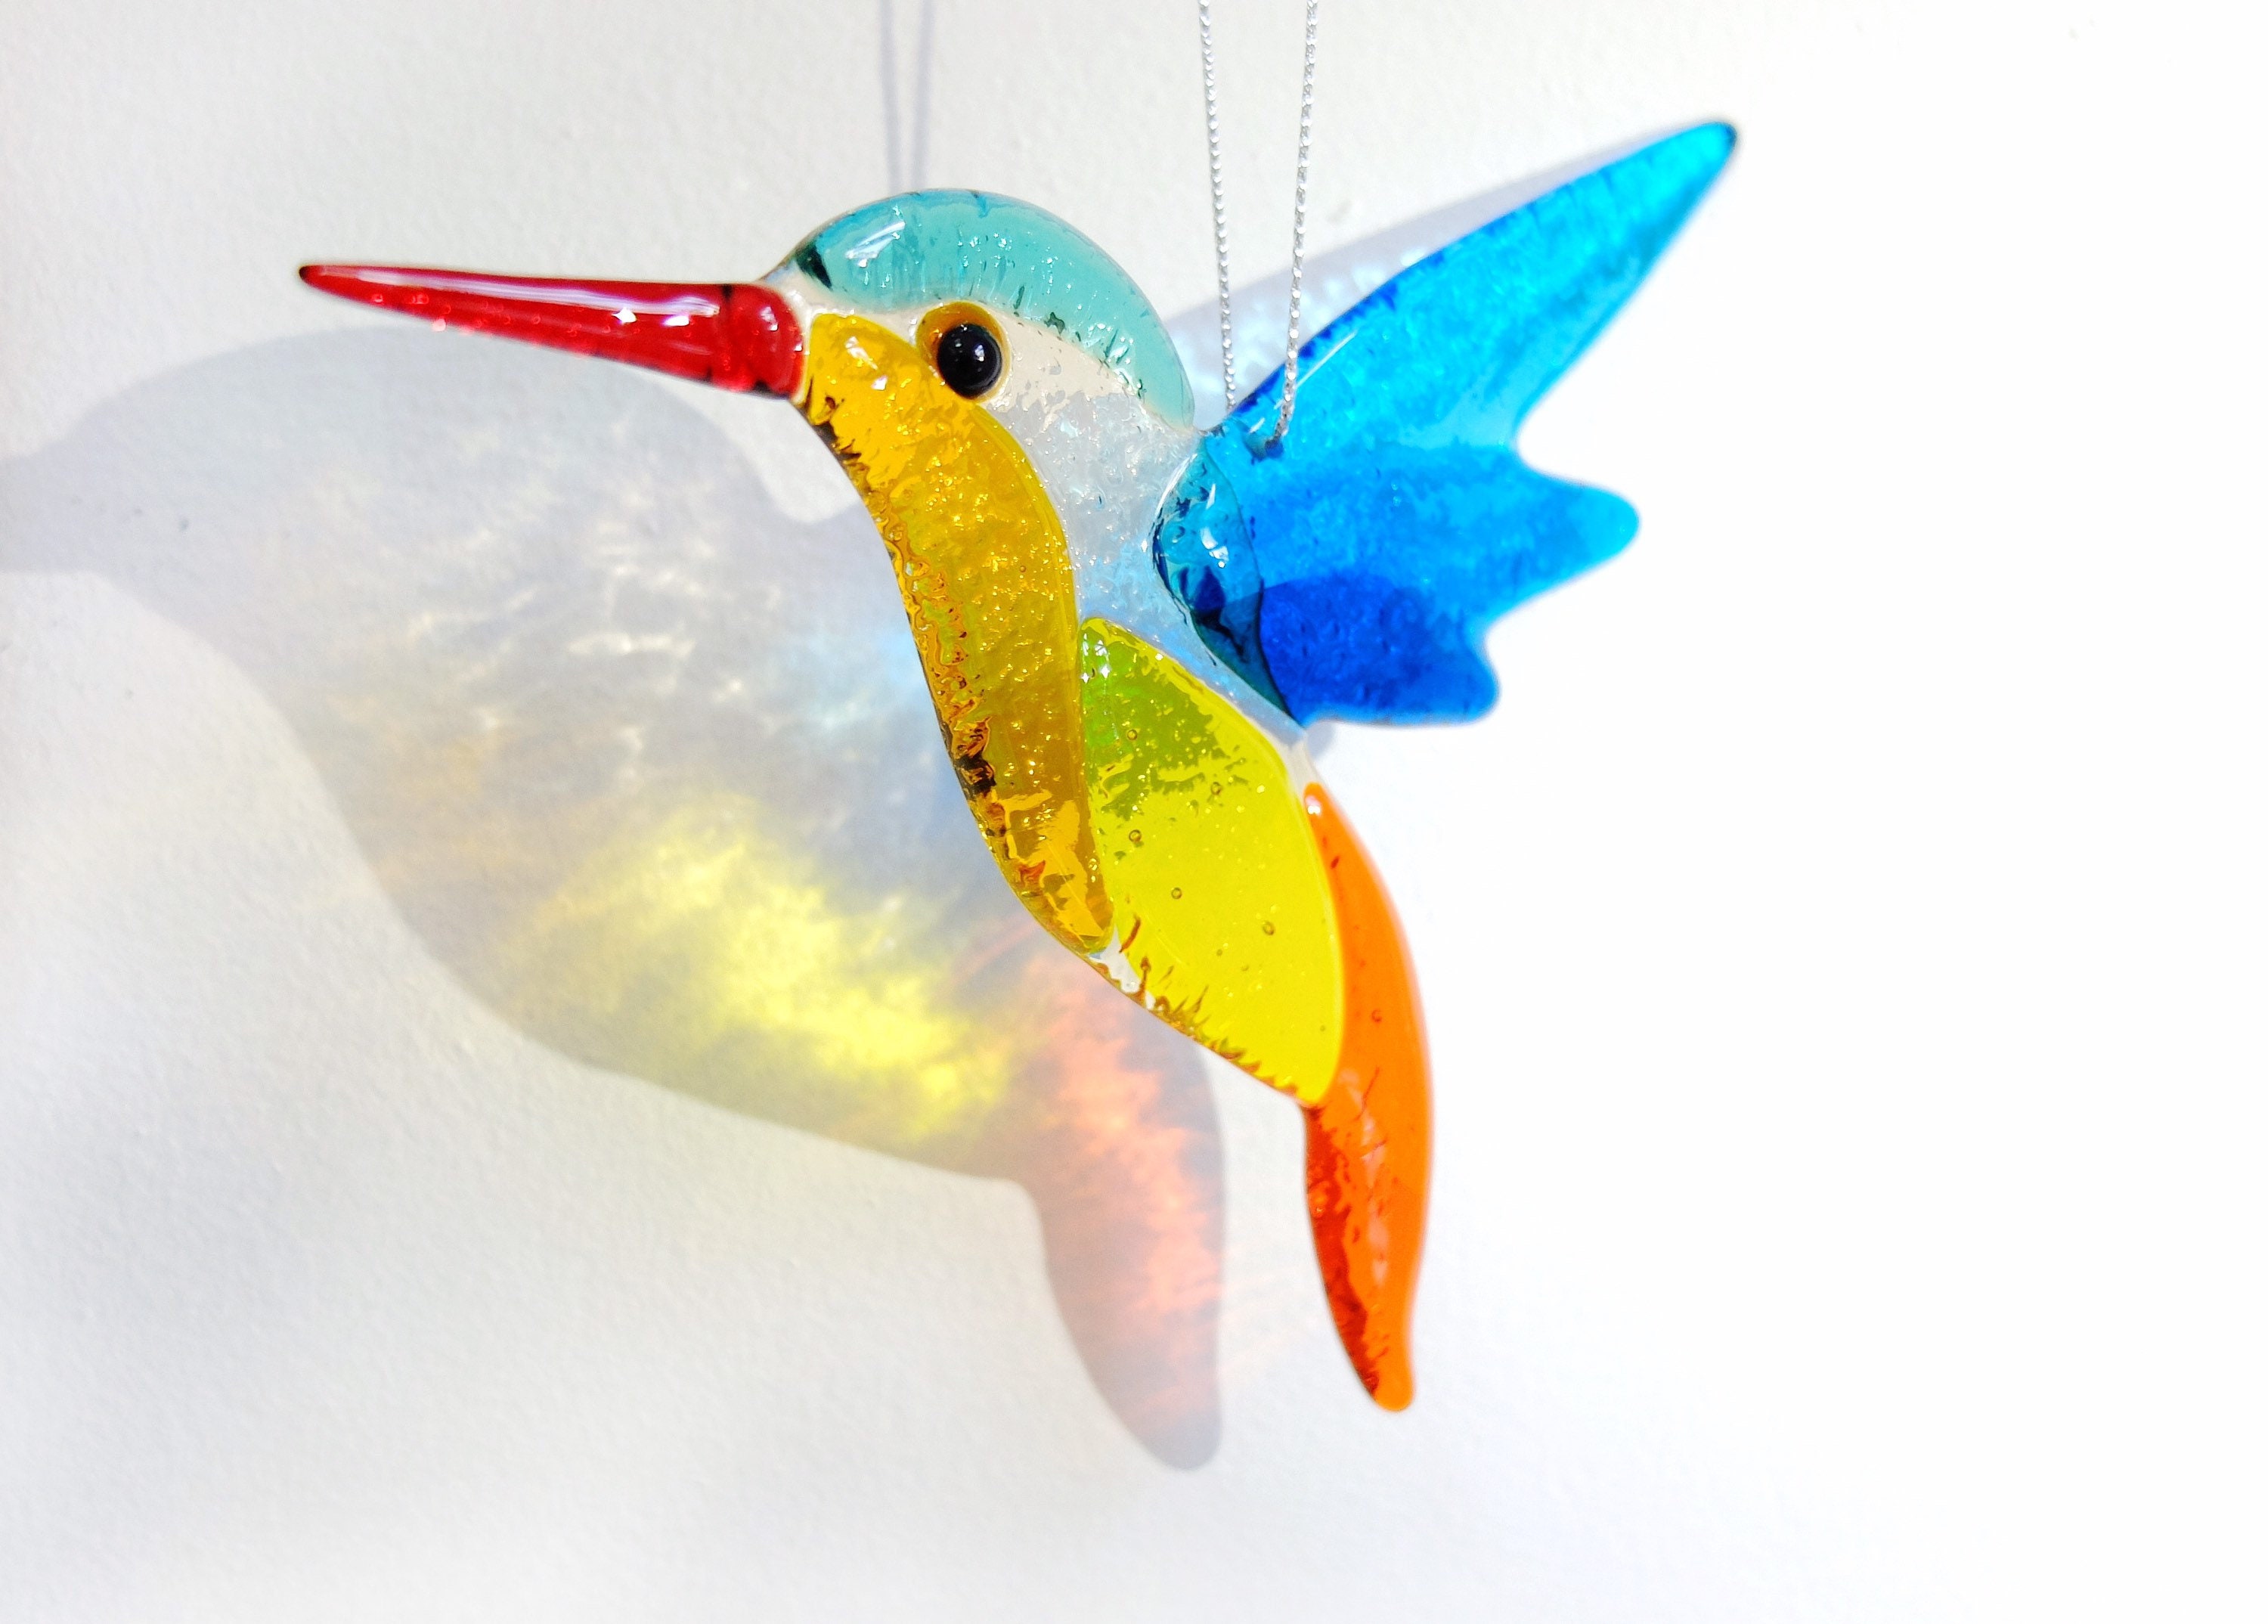 Attrape-soleil en acrylique oiseau coloré, décoration murale